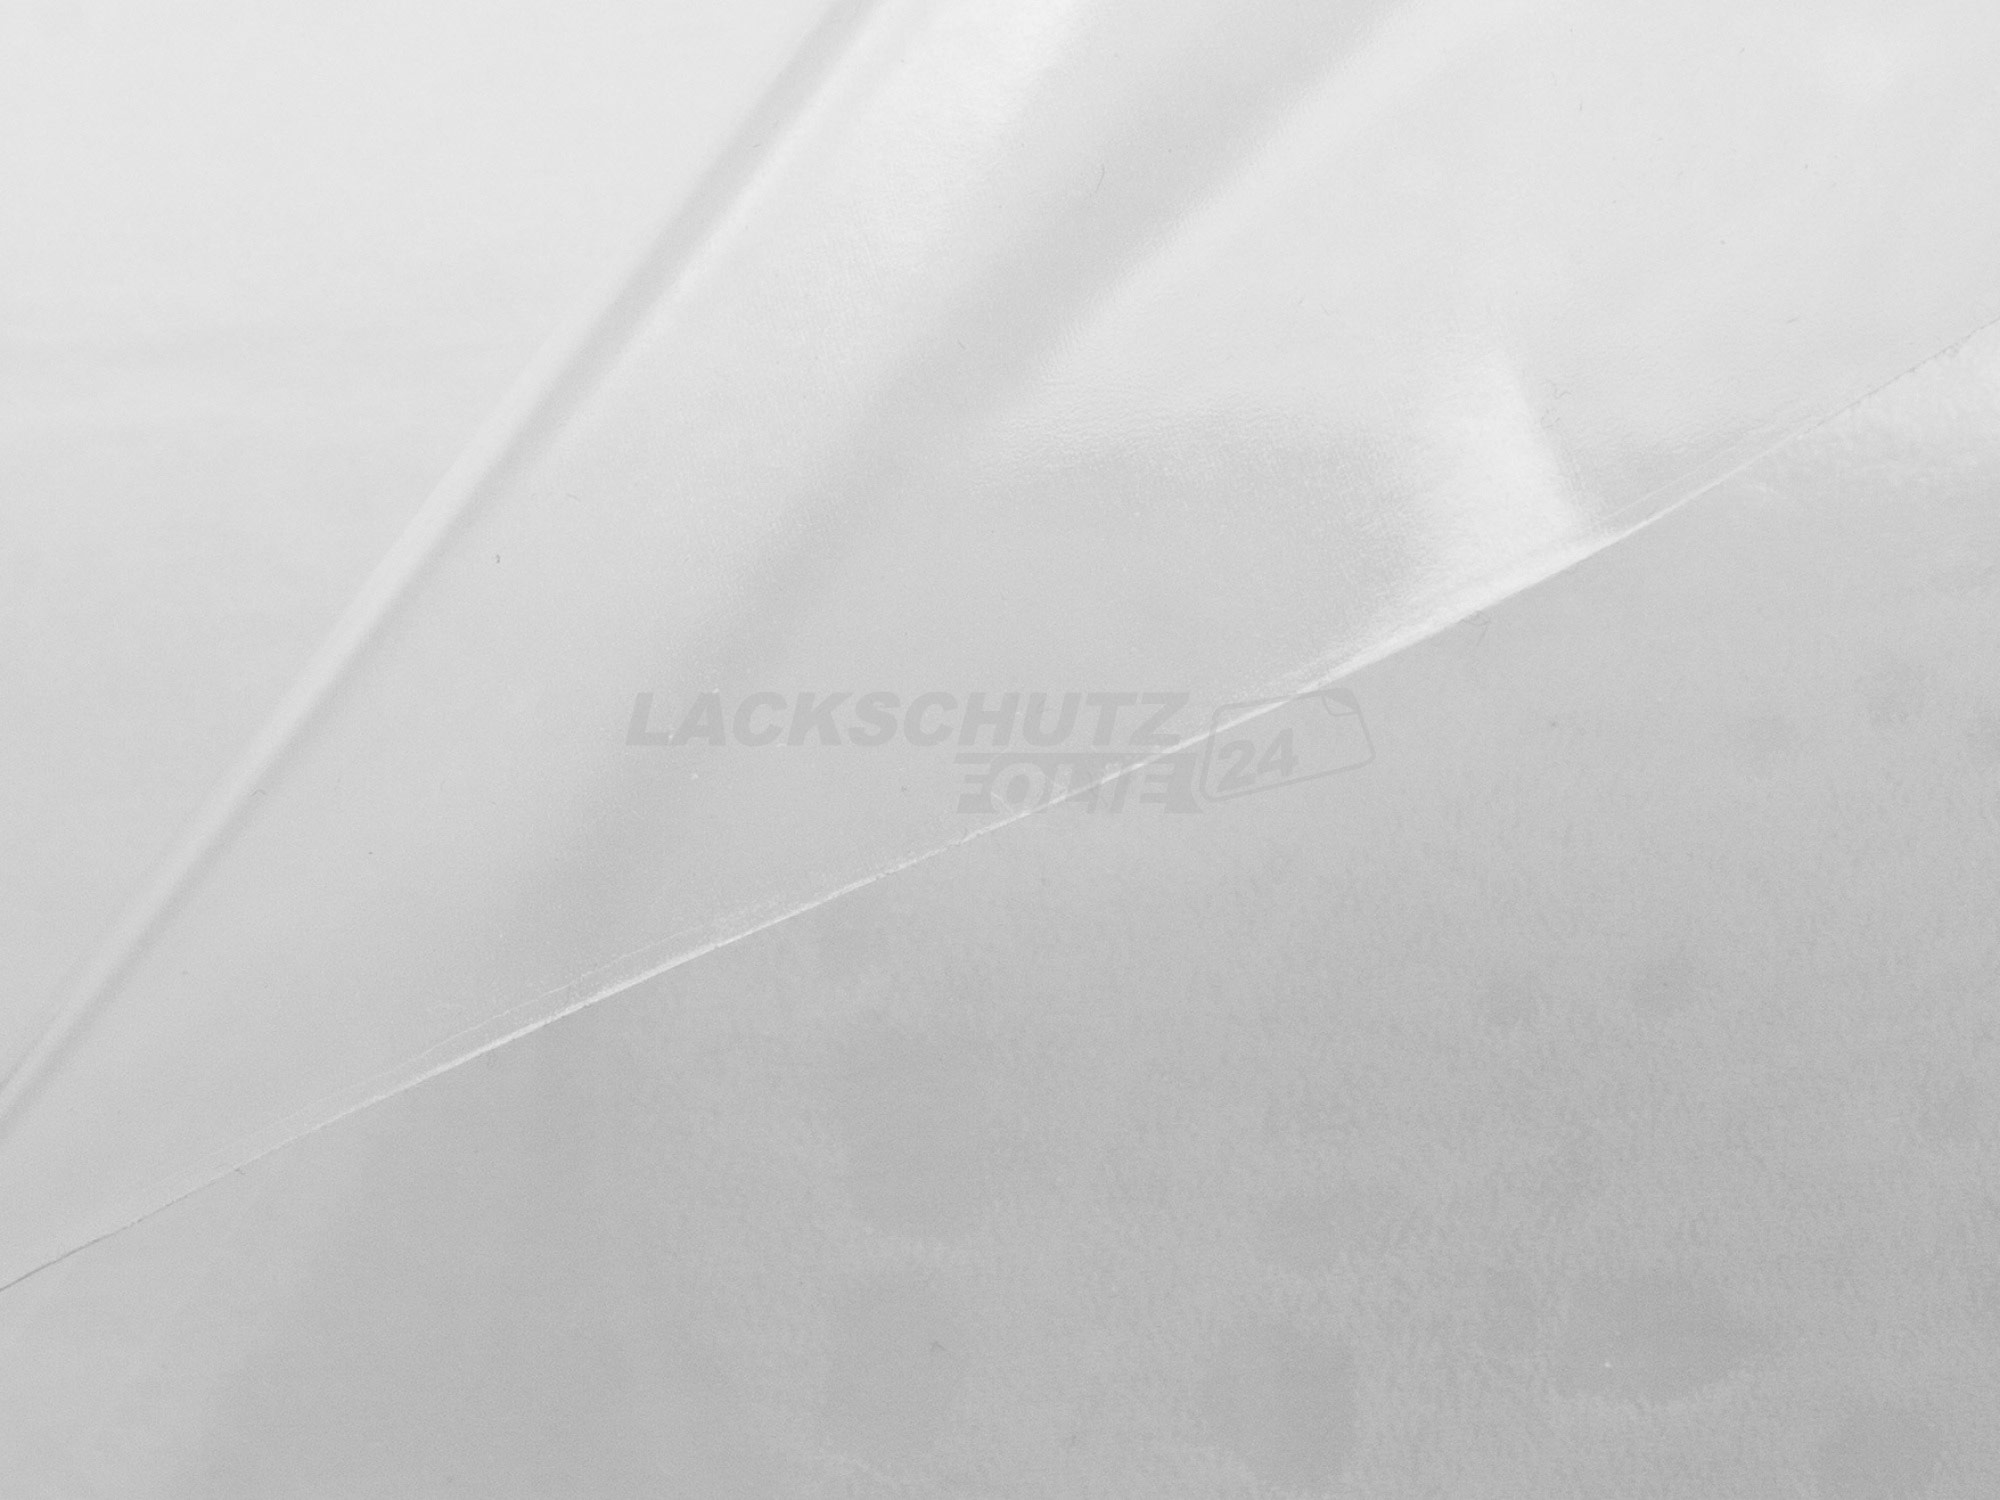 Ladekantenschutzfolie - Transparent Glatt Hochglänzend 240 µm stark für BMW X1 Typ E84, BJ 08/2009-2015